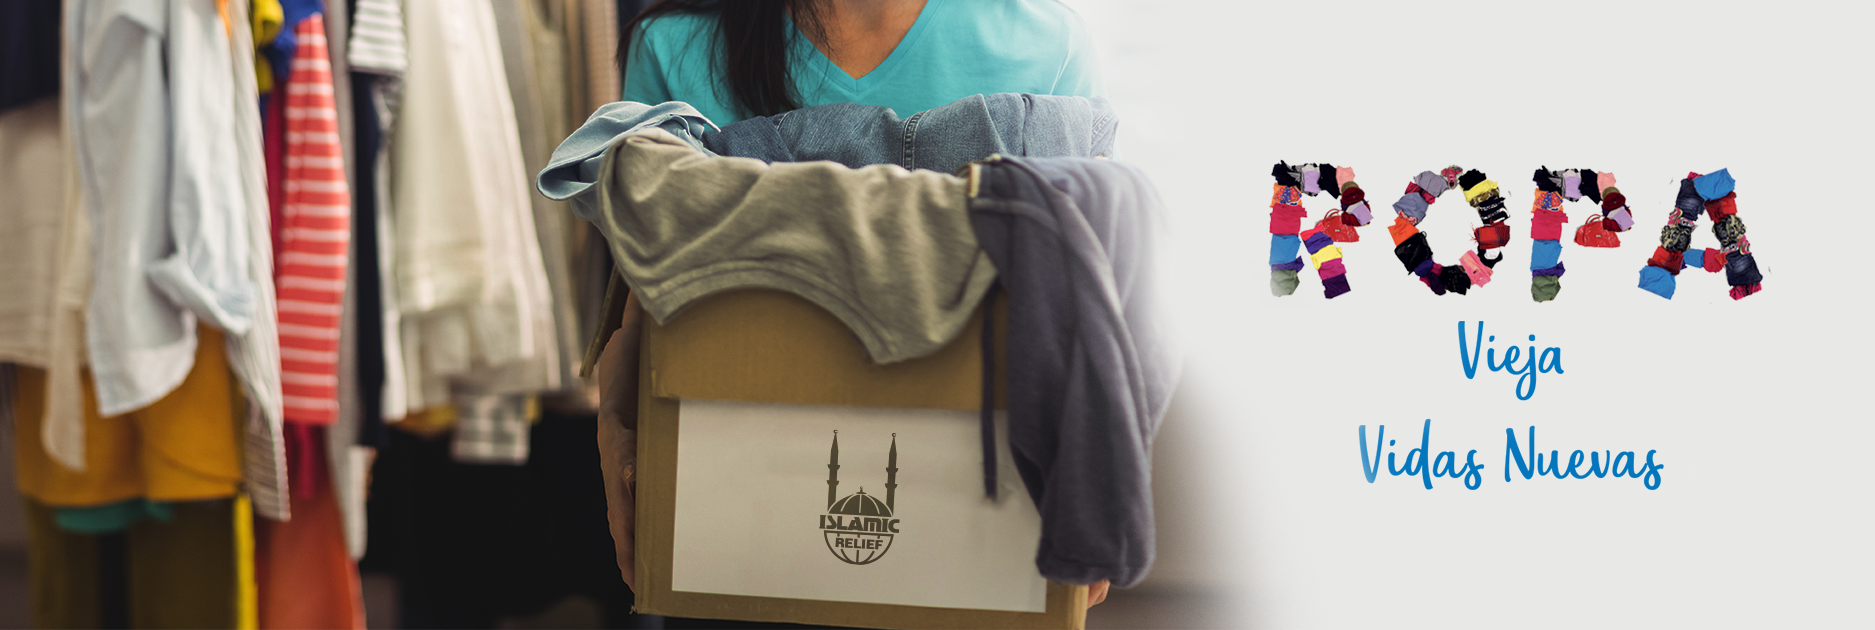 Reciclaje de ropa usada - Donar ropa usada - Islamic Relief España